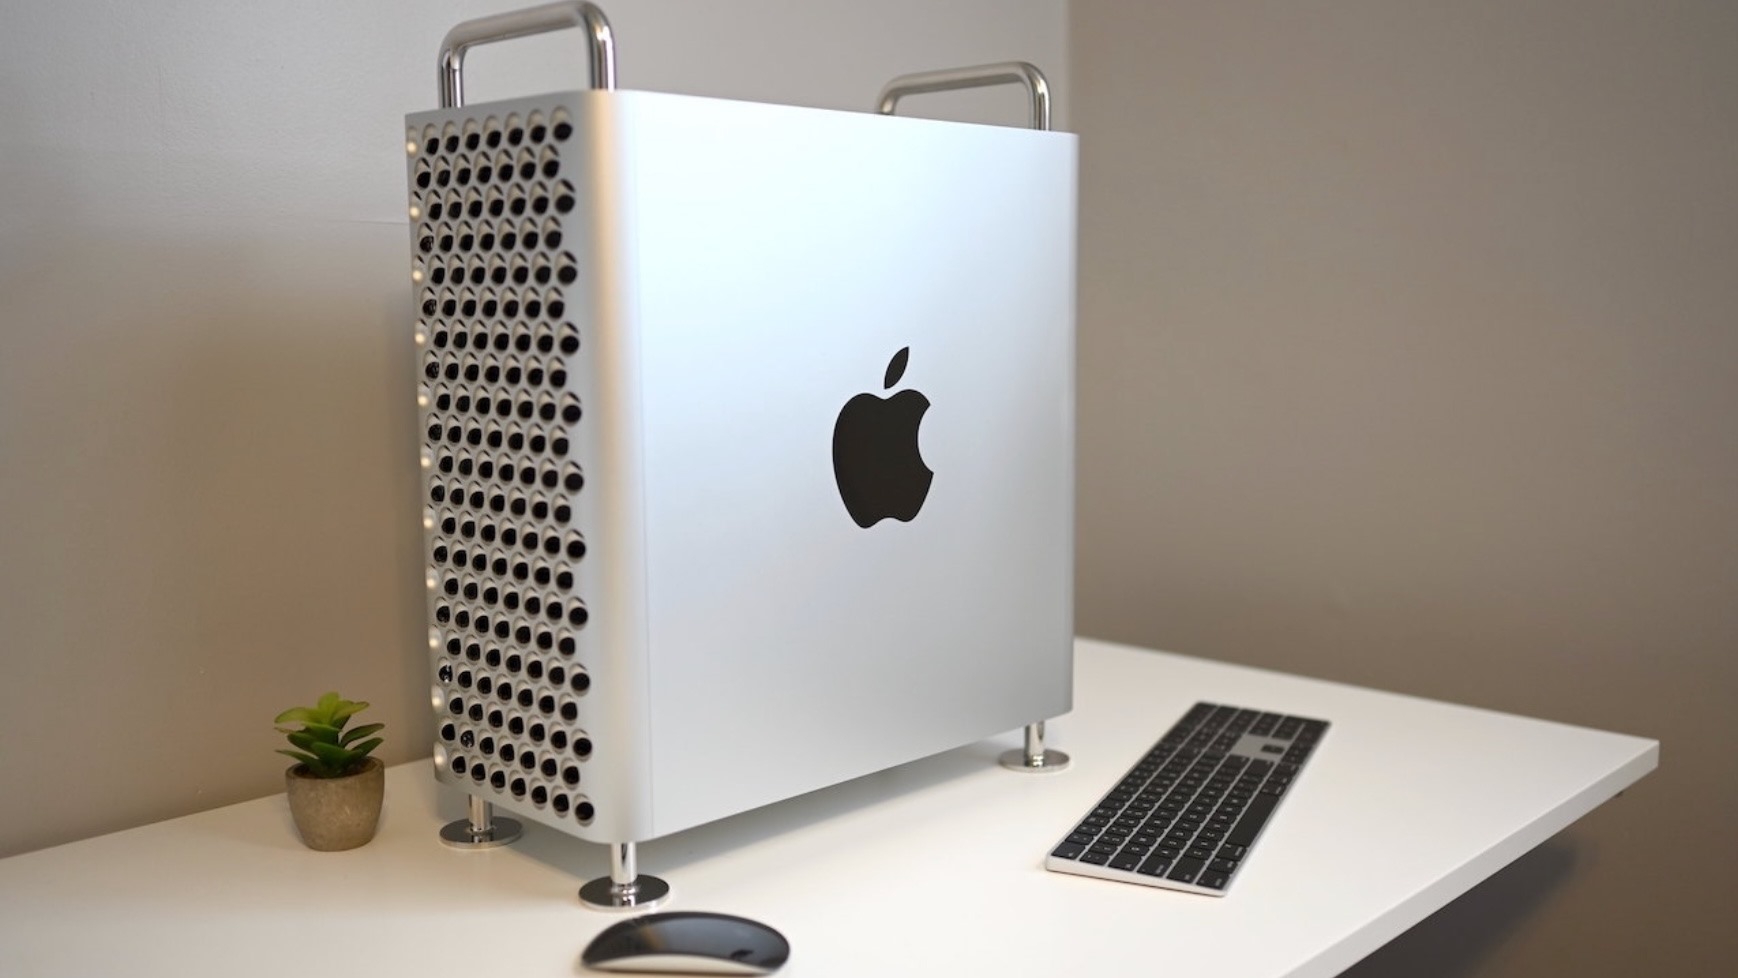 Mac Pro là một trong những thiết bị cao cấp nhất của Apple. Ảnh: Apple Insider